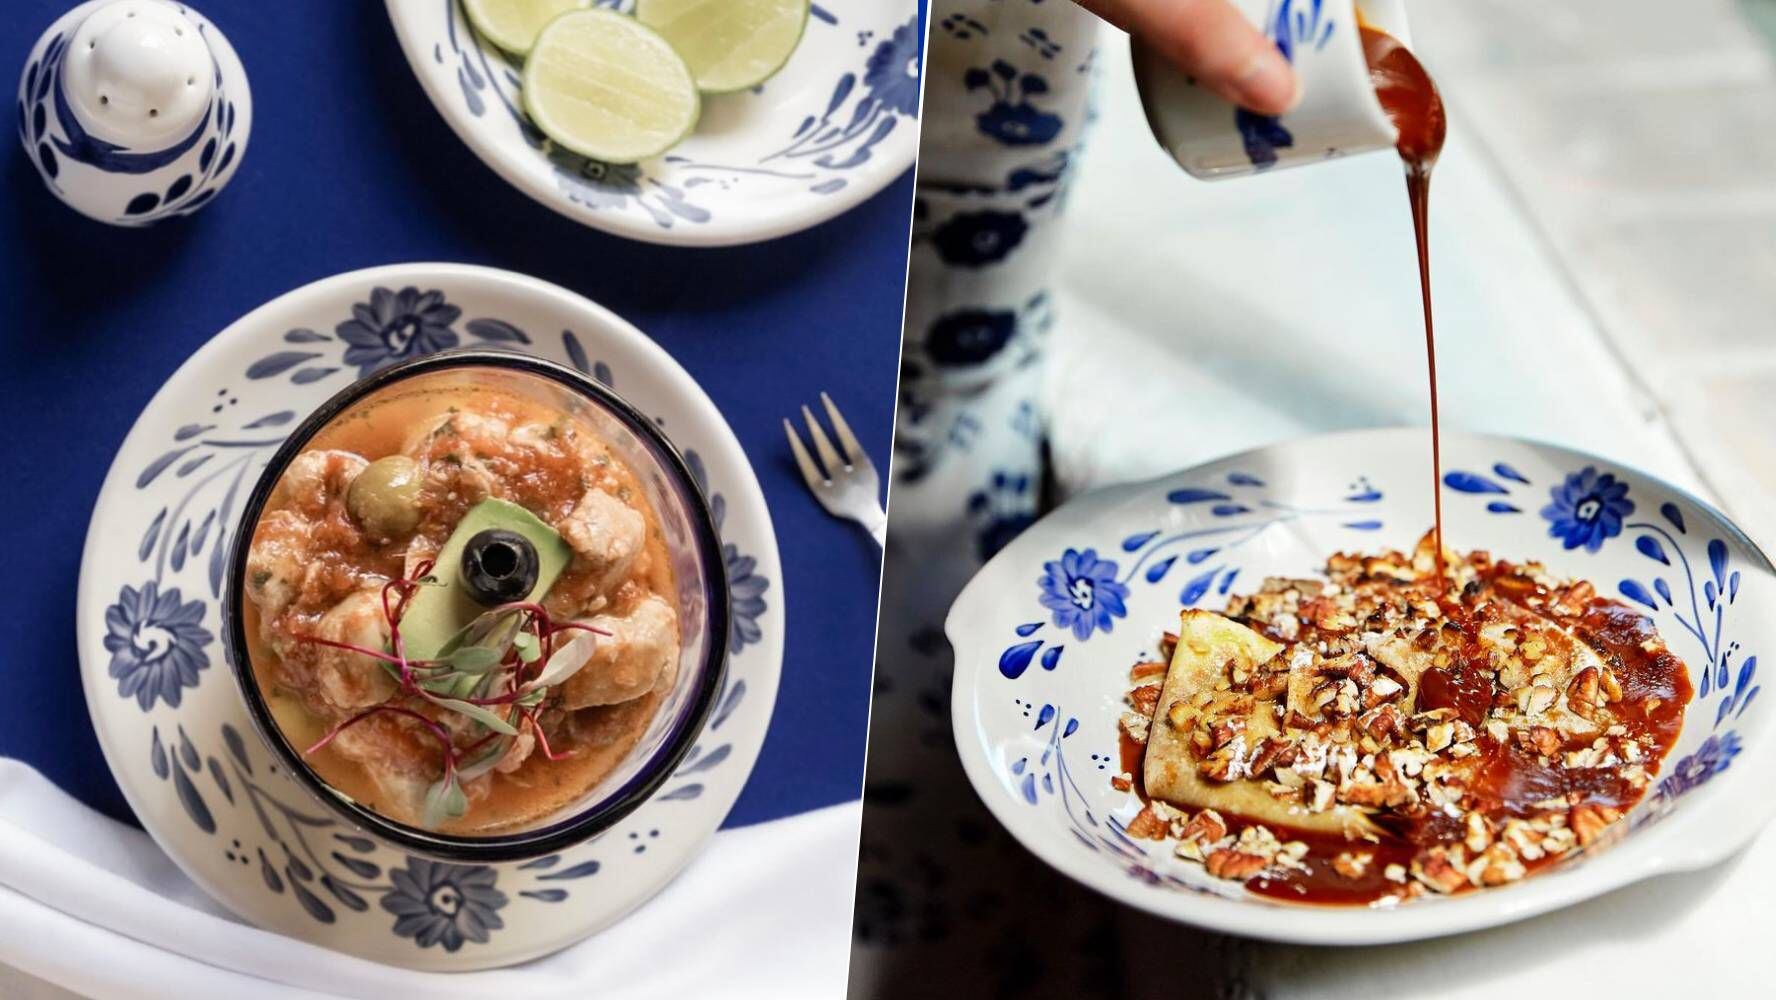 El restaurante San Ángel Inn lleva 60 años en servicio, ofrece platillos mexicanos como ceviche acapulqueño y de postre, crepas con cajeta. (Fotos: Instagram / @restaurantesanangelinn).